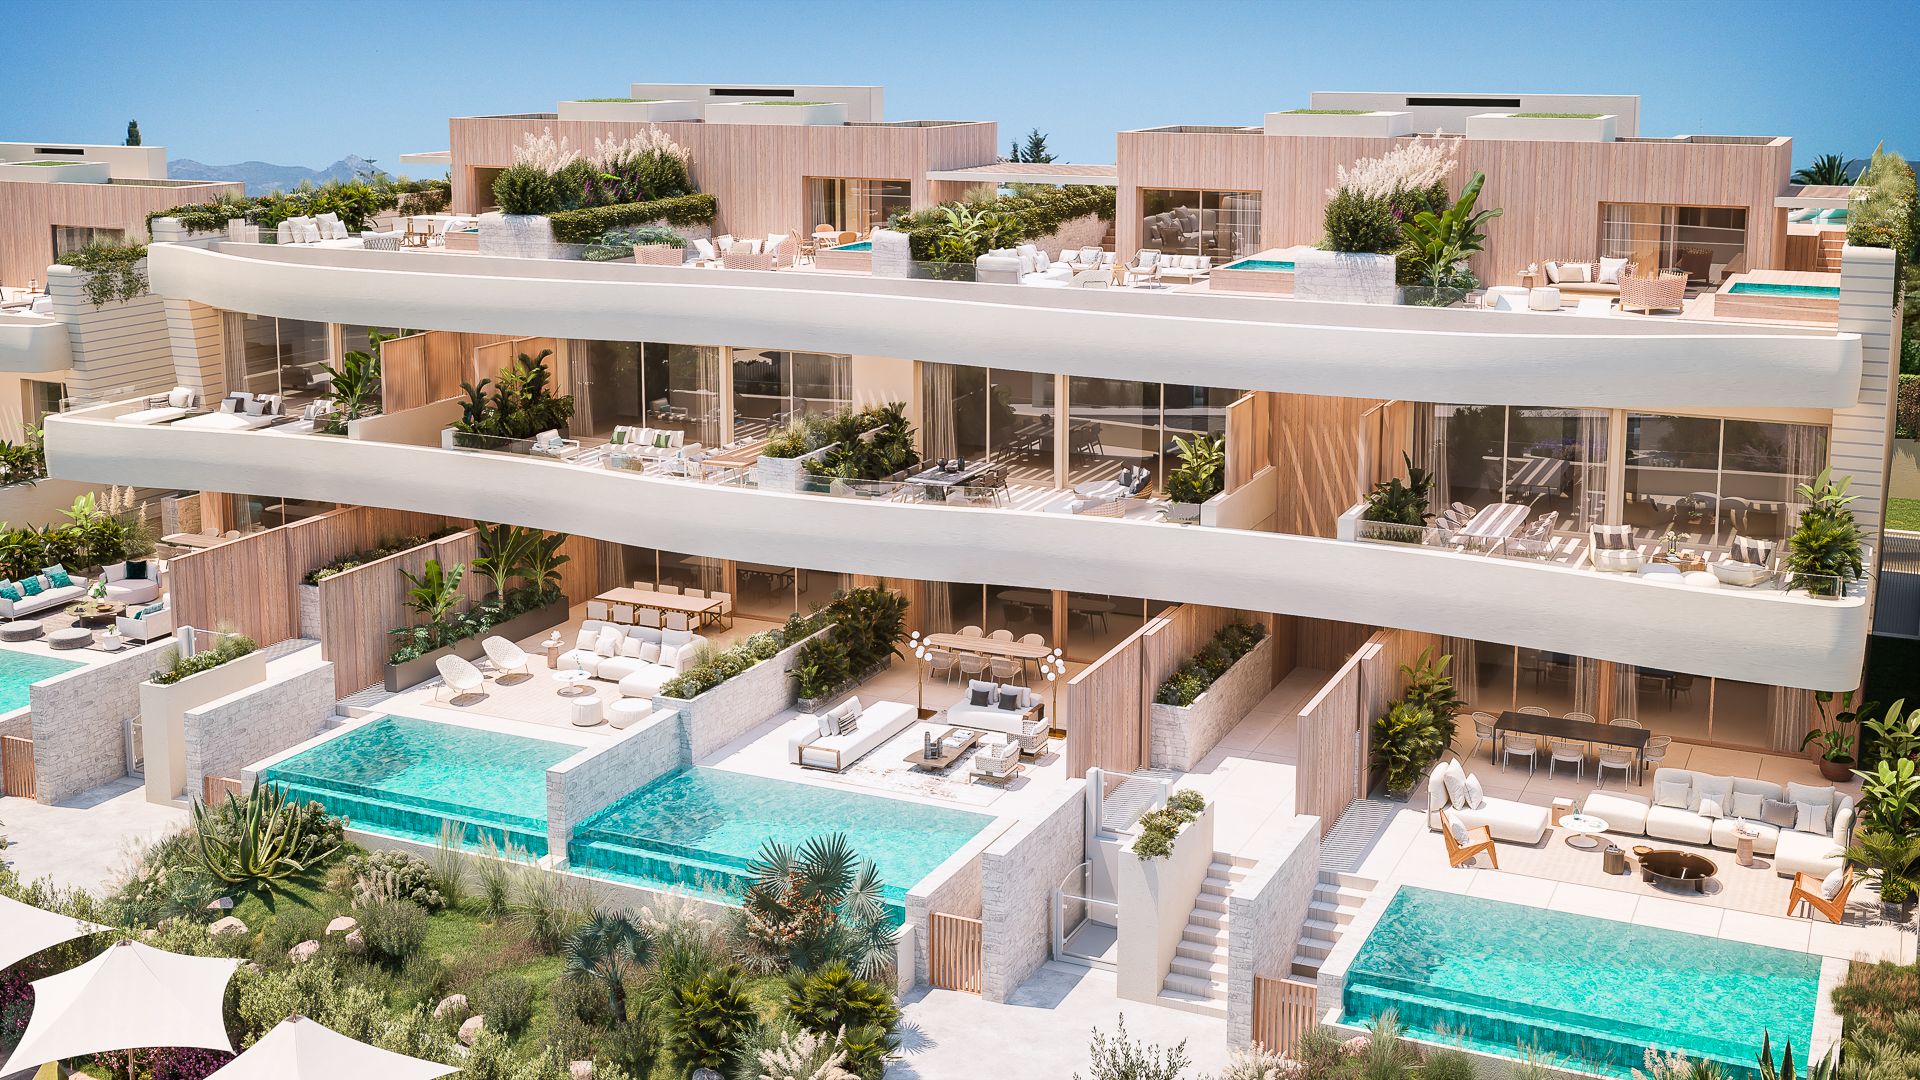 Luxury beachfront resort Townvilla | Engel & Völkers Marbella